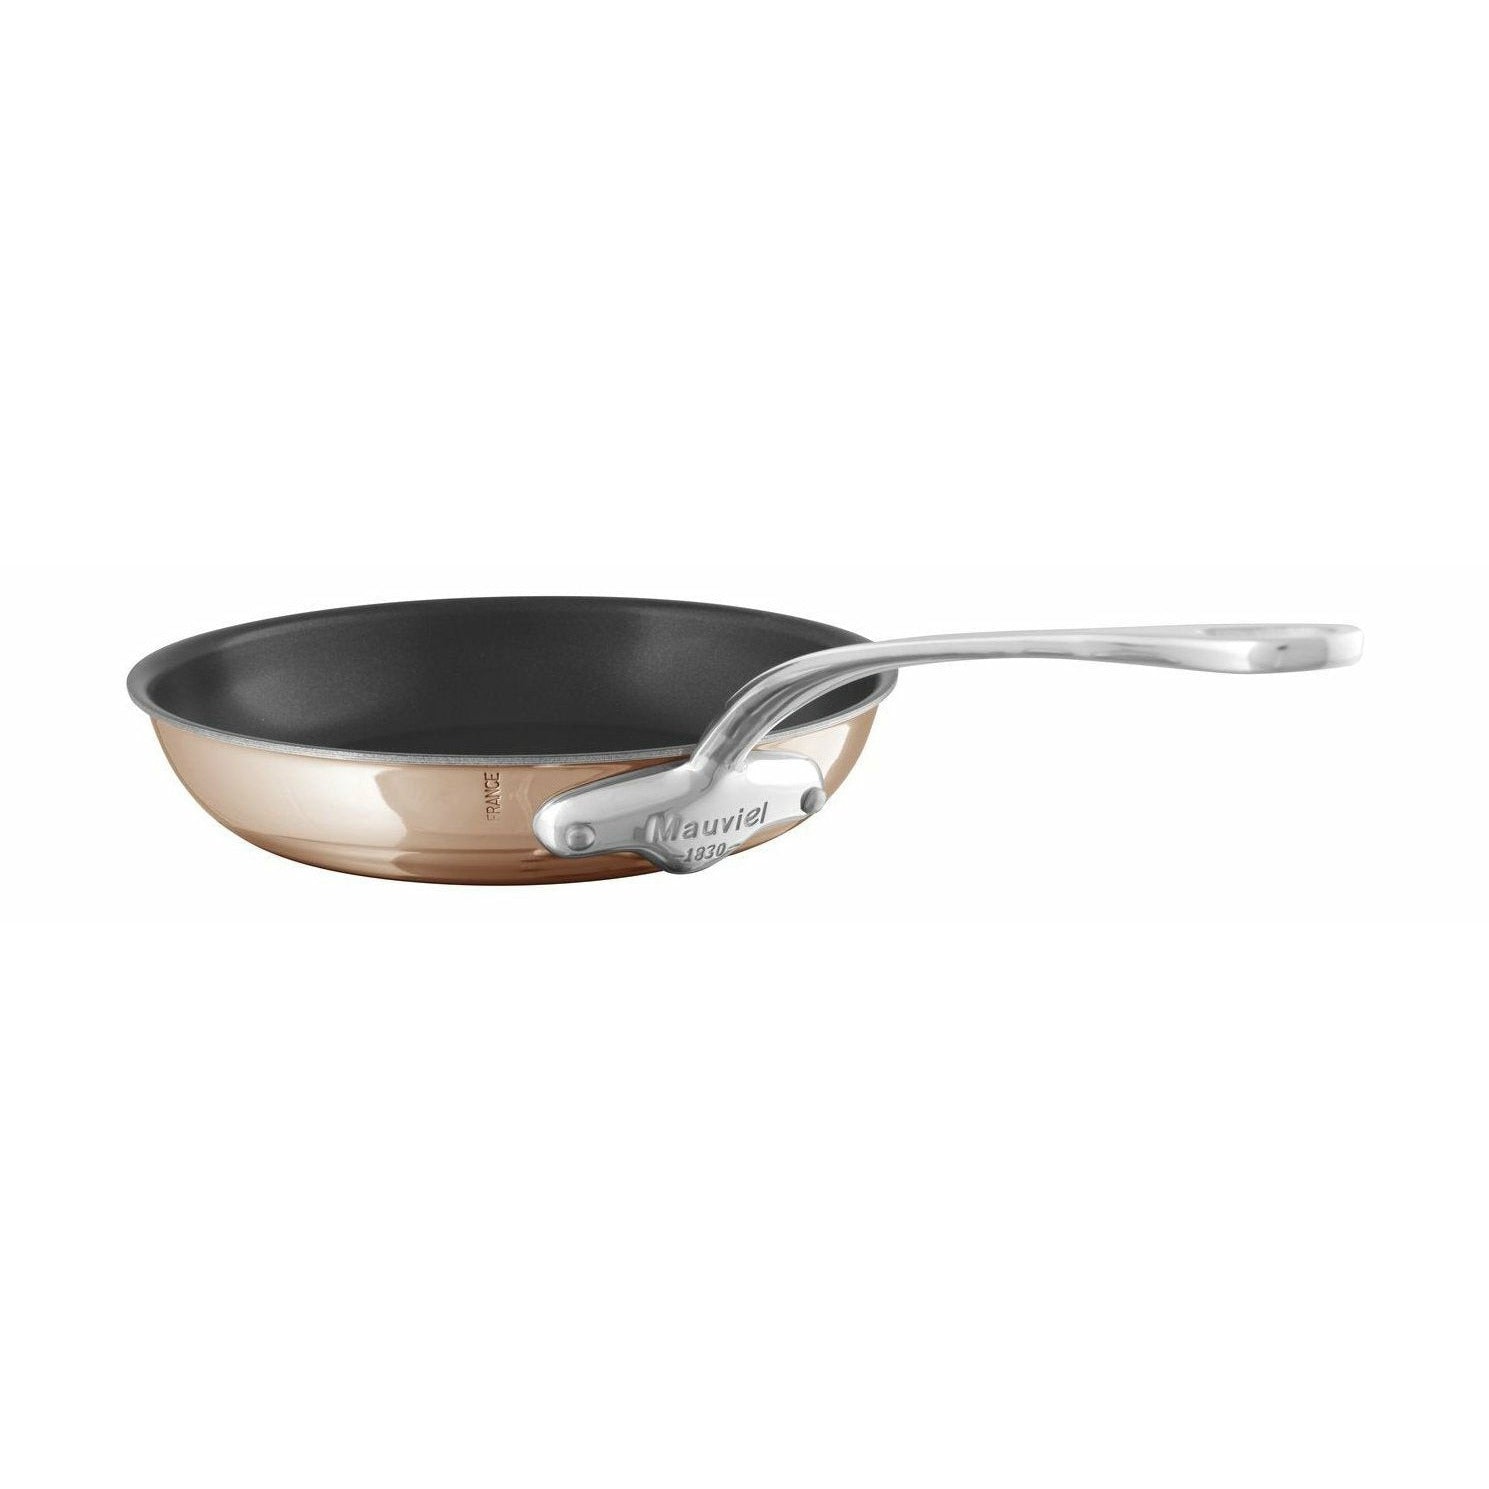 Mauviiel M "6s Pan à frire non cuivre / acier inoxydable non bâton, Ø 26 cm